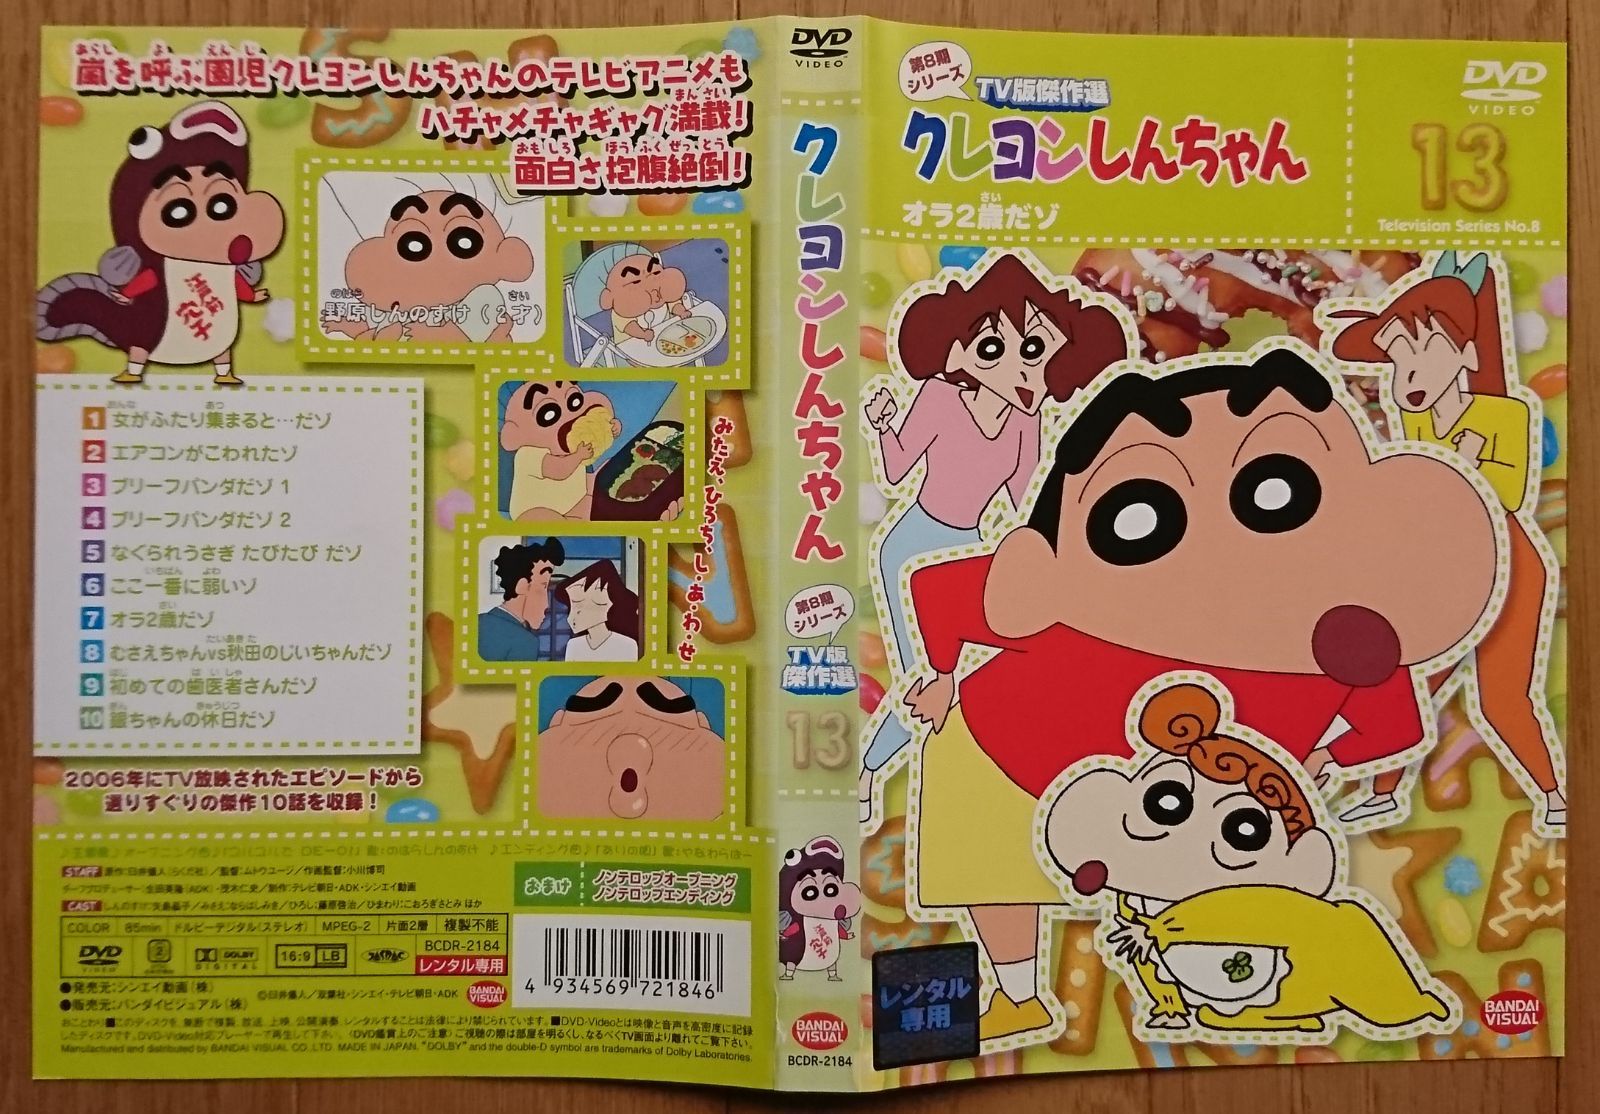 レンタル版DVD】クレヨンしんちゃん 第8期シリーズTV版傑作選 13